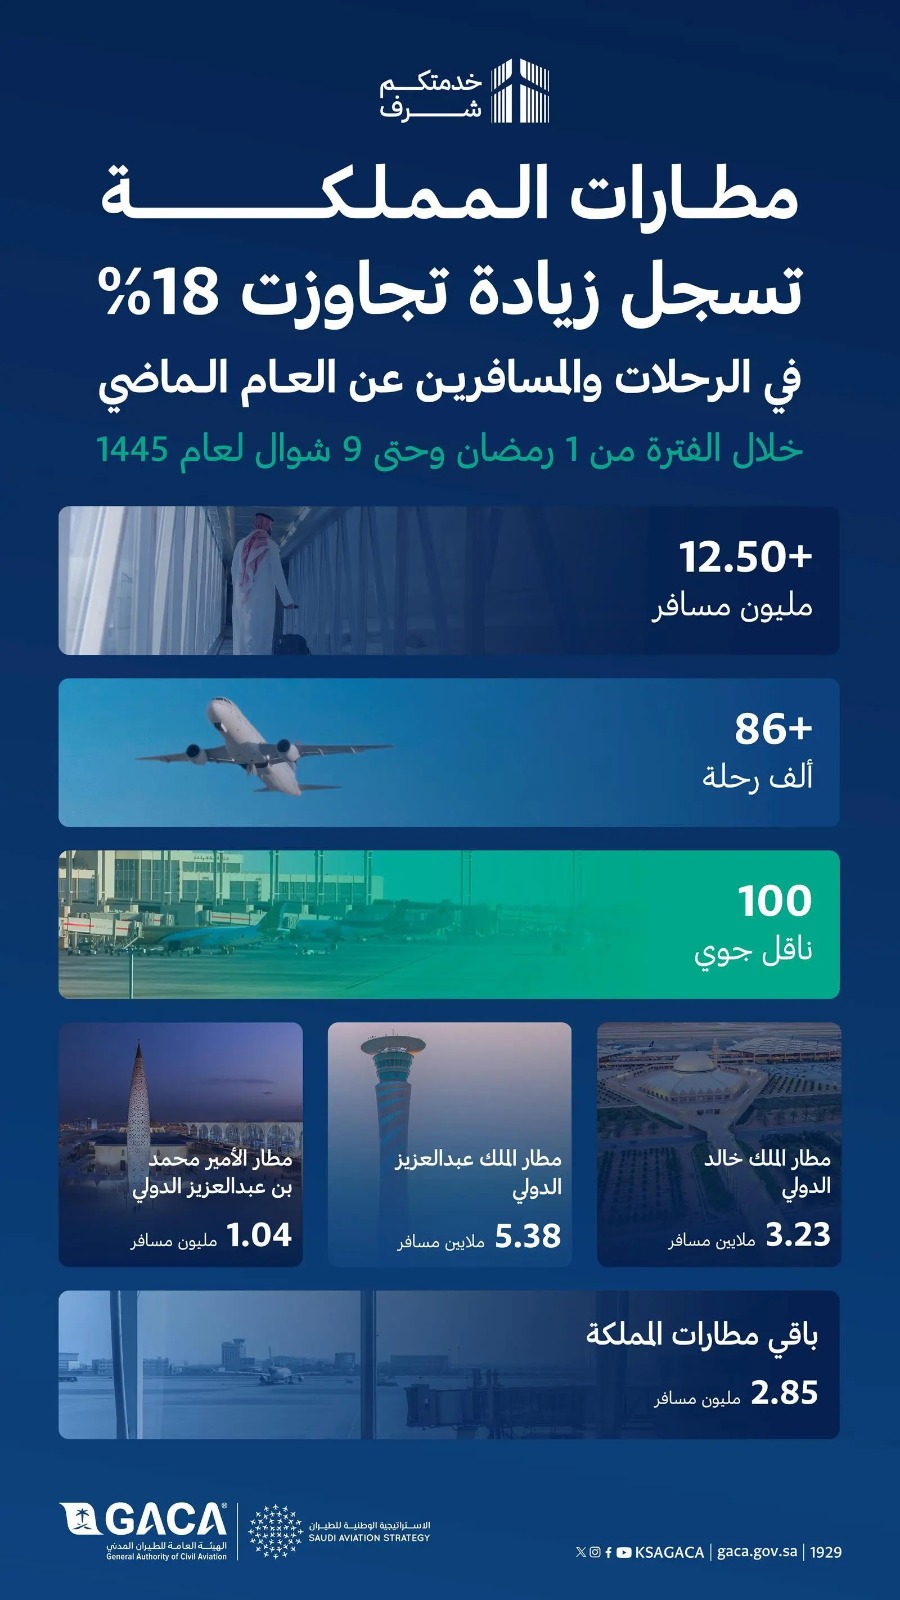 مطارات المملكة تُسجل 12.50 مليون مسافر خلال شهر رمضان وإجازة عيد الفطر 